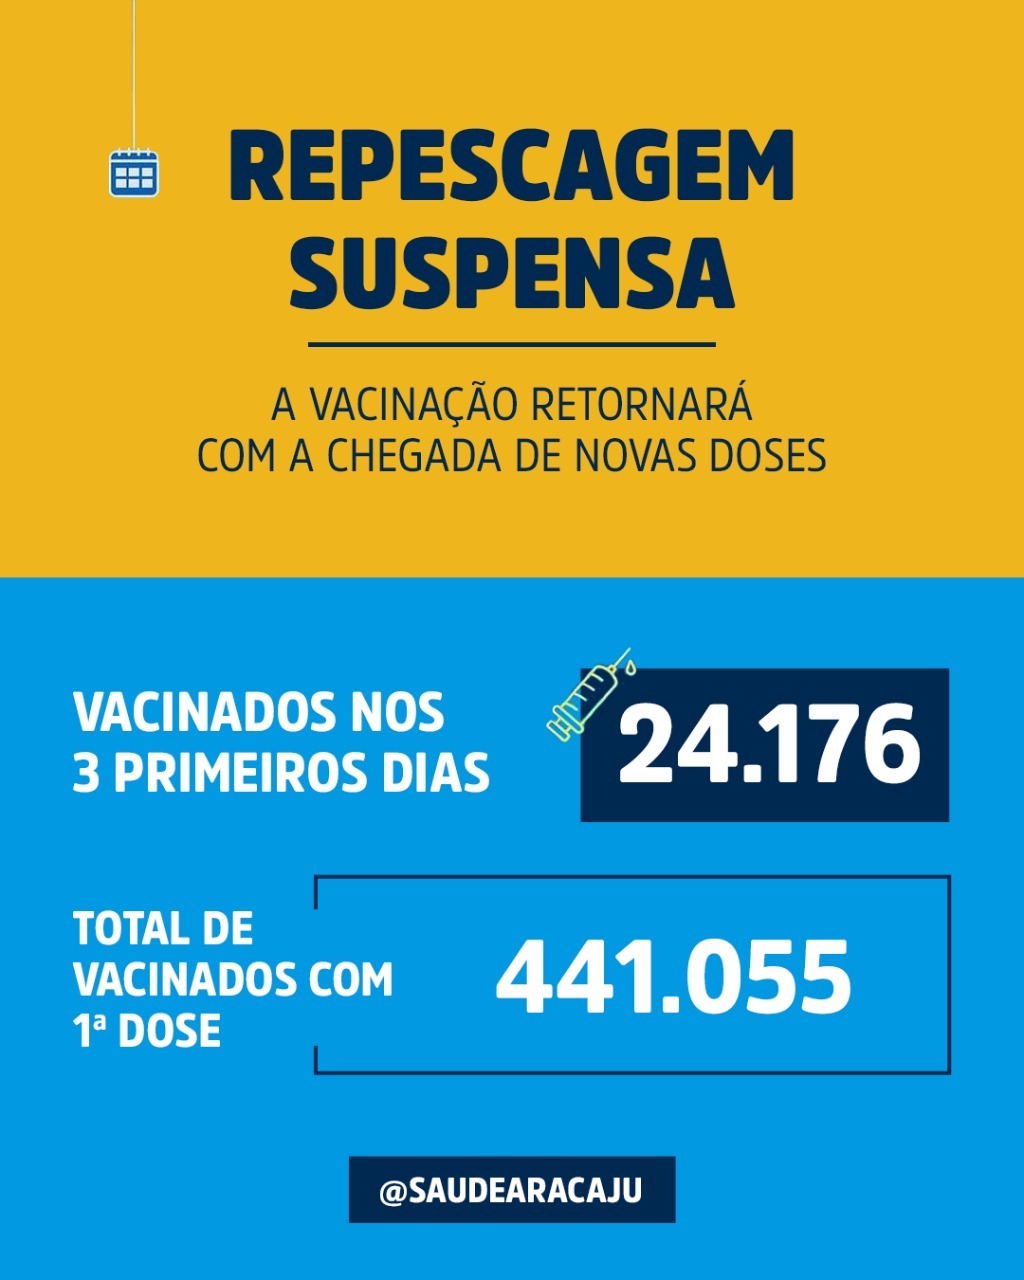 Aracaju suspende repescagem até chegada de novas doses de vacina